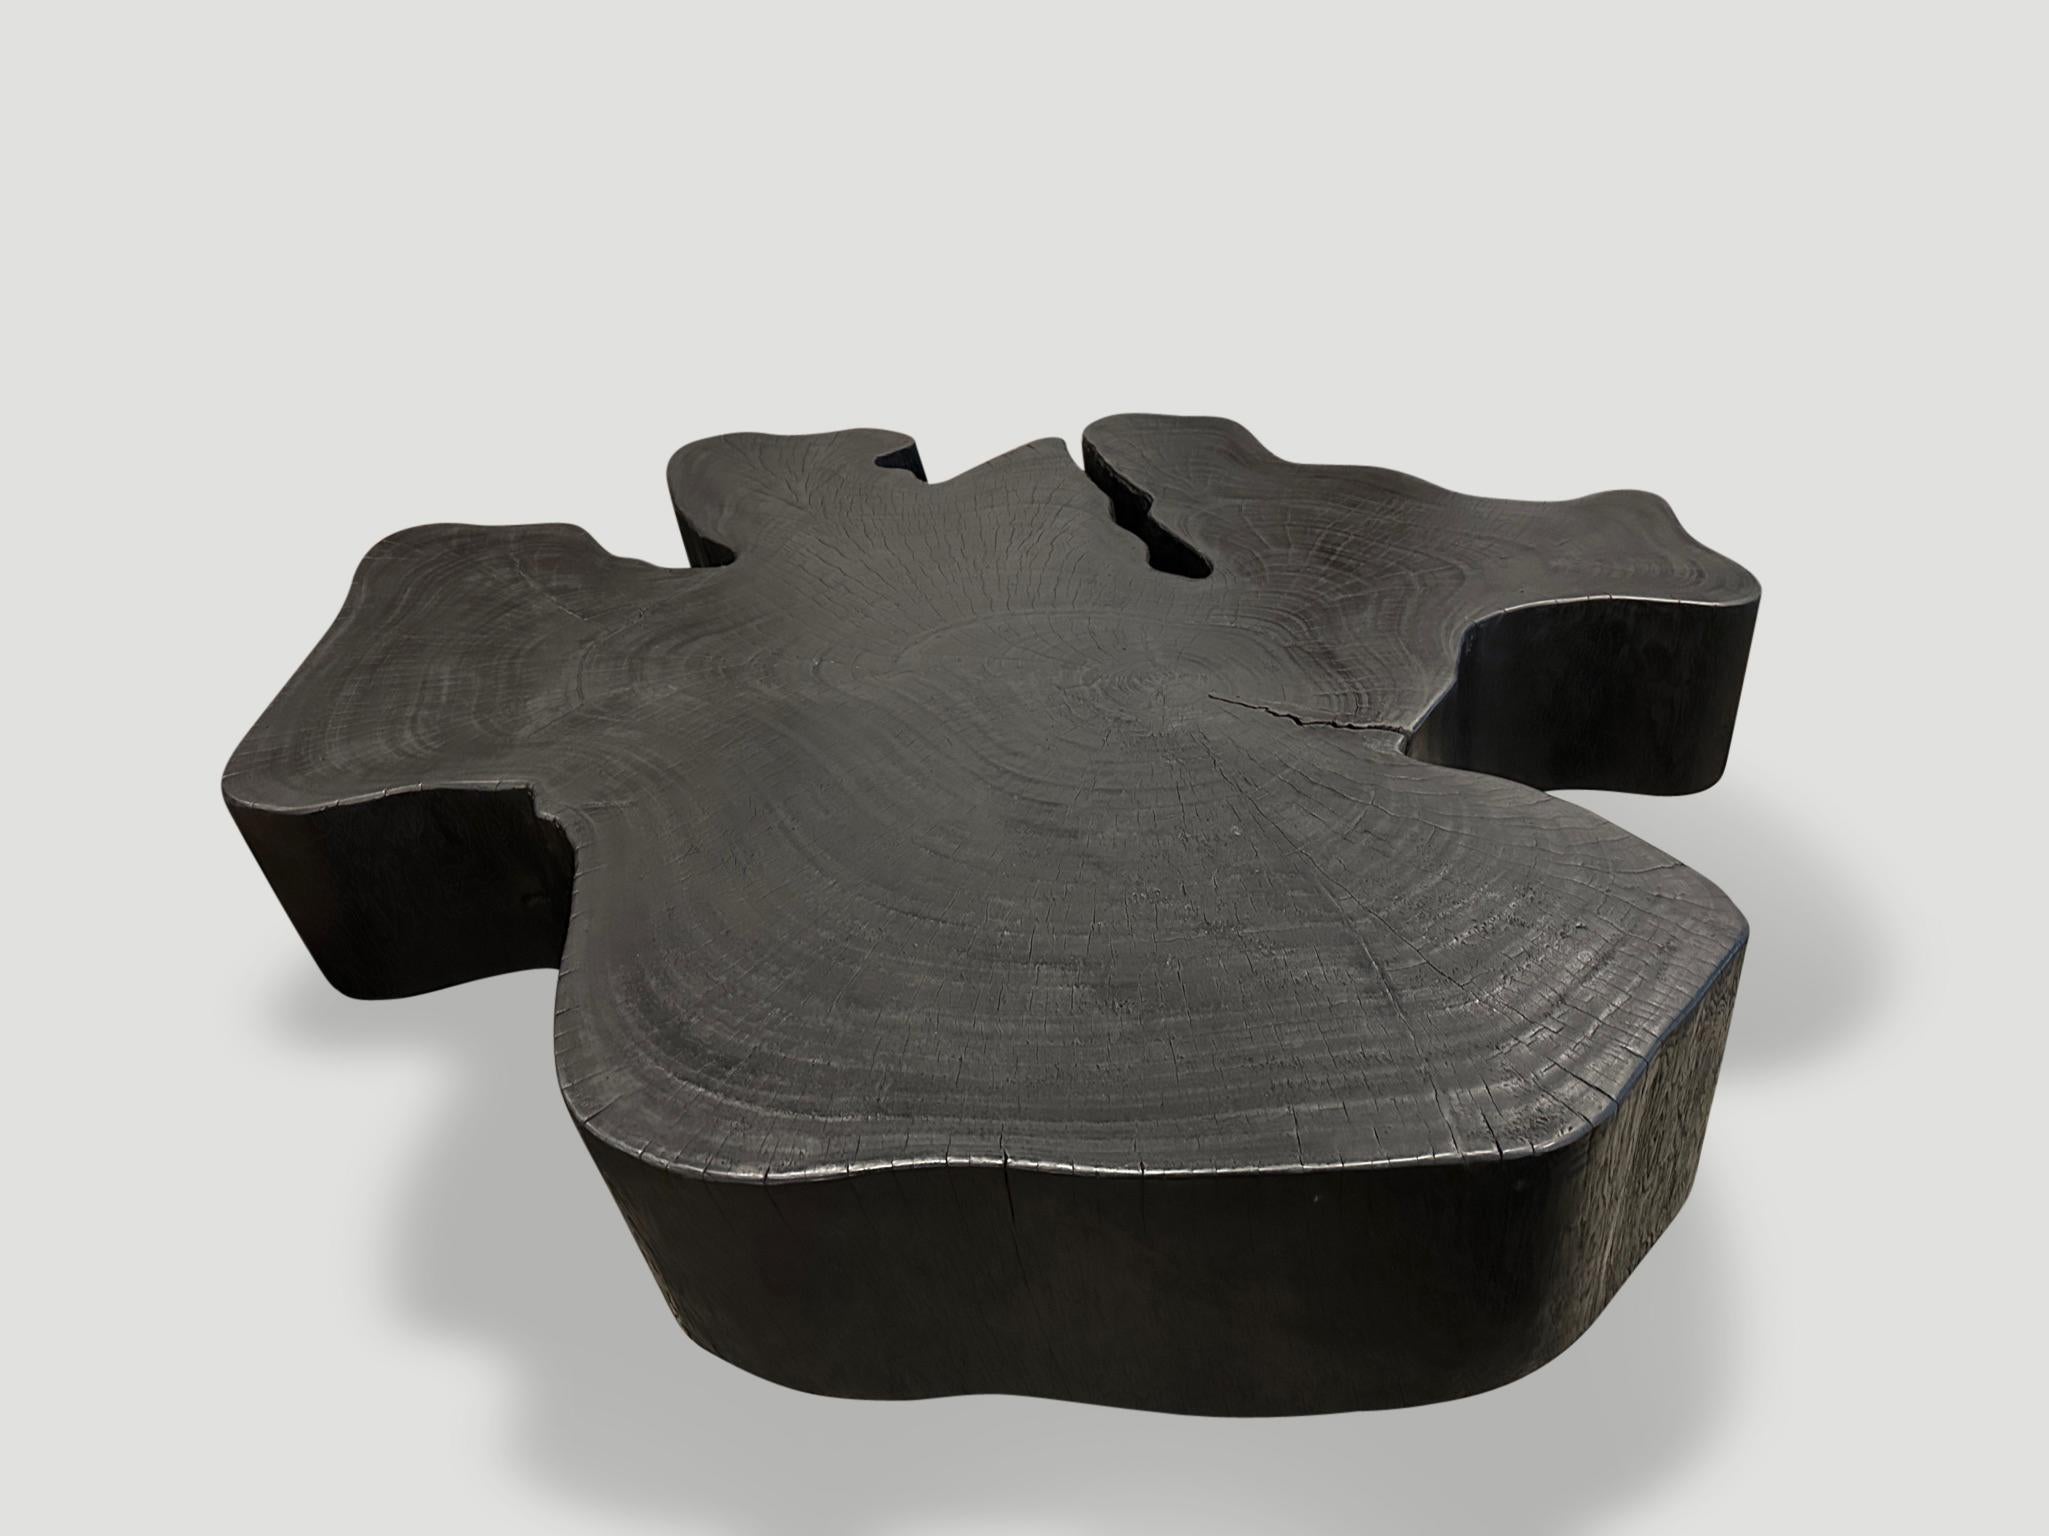 Beeindruckender Couchtisch aus aufgearbeiteten Mangowurzel-Platten, der auf minimalistischen Kegelbeinen zehn Zentimeter über dem Boden schwebt. Gebrannt, geschliffen und versiegelt, wobei die schöne Holzmaserung zum Vorschein kommt. Die Höhe kann